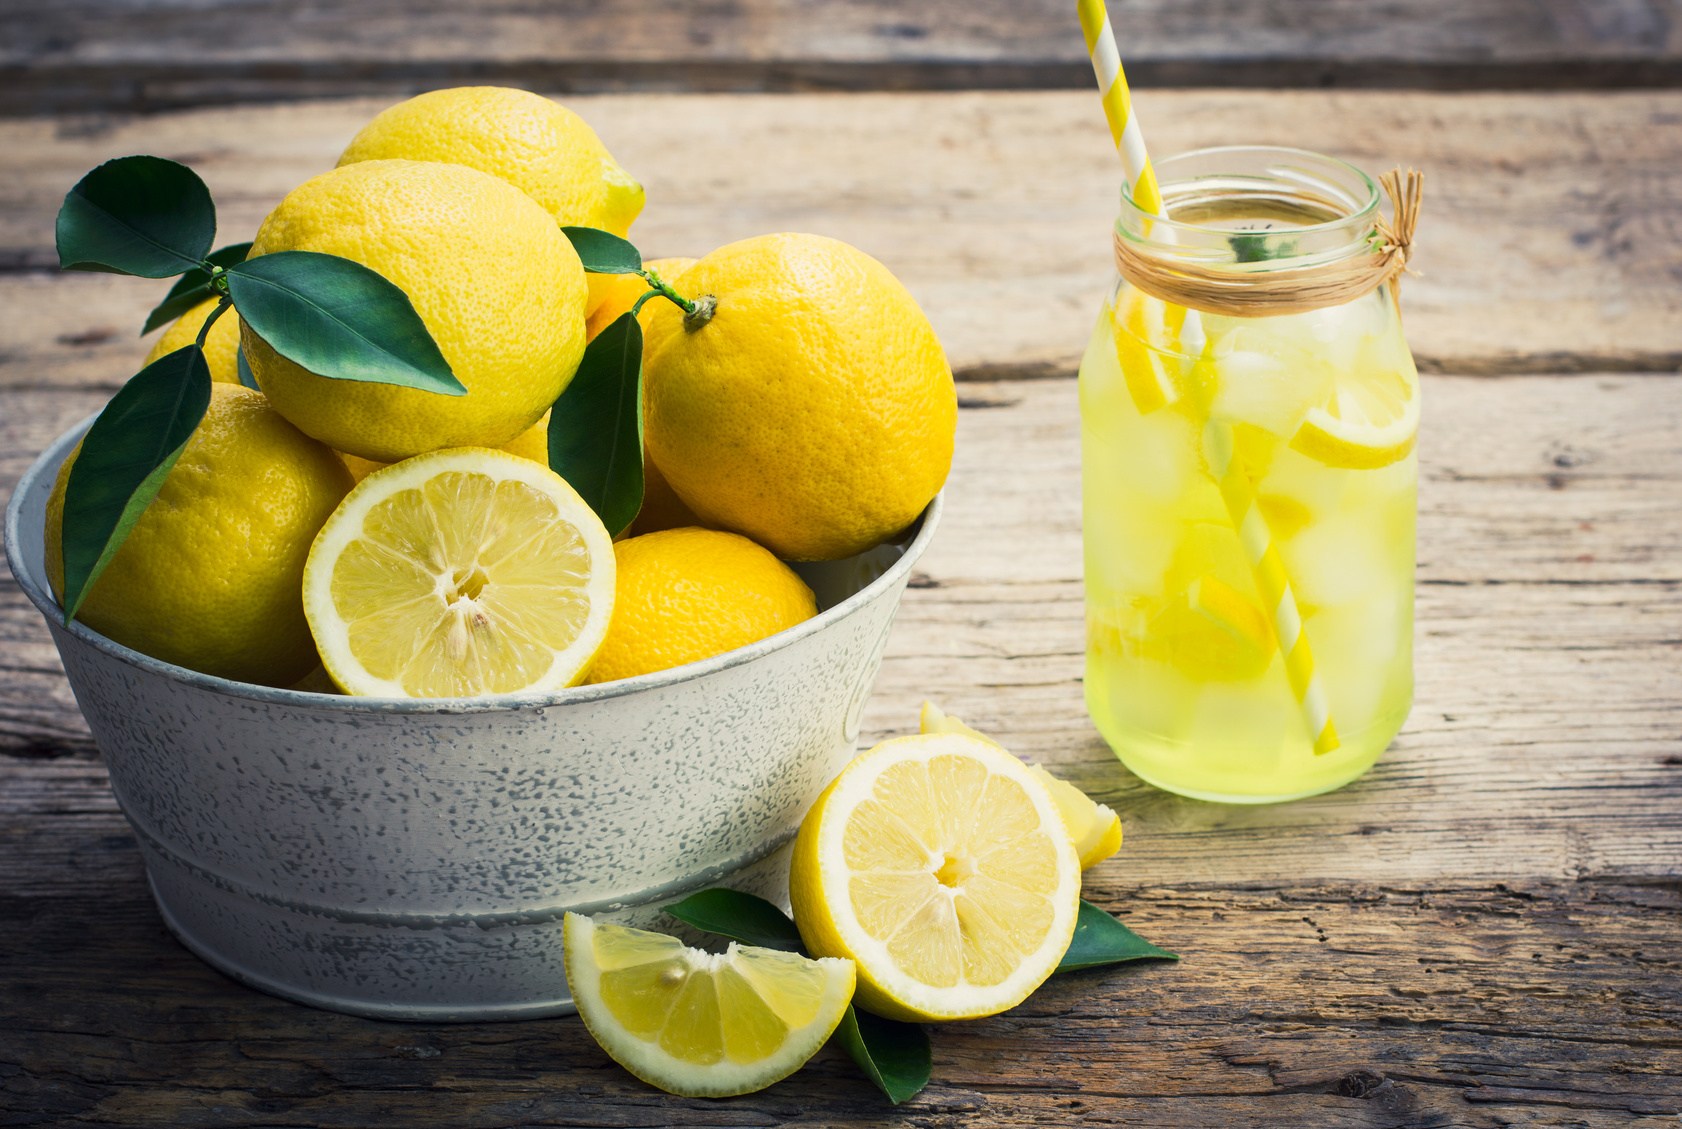 كنز في بيتك بترميه كل يوم اعرف فوائد قشر الليمون لصحتك وصحة أولادك